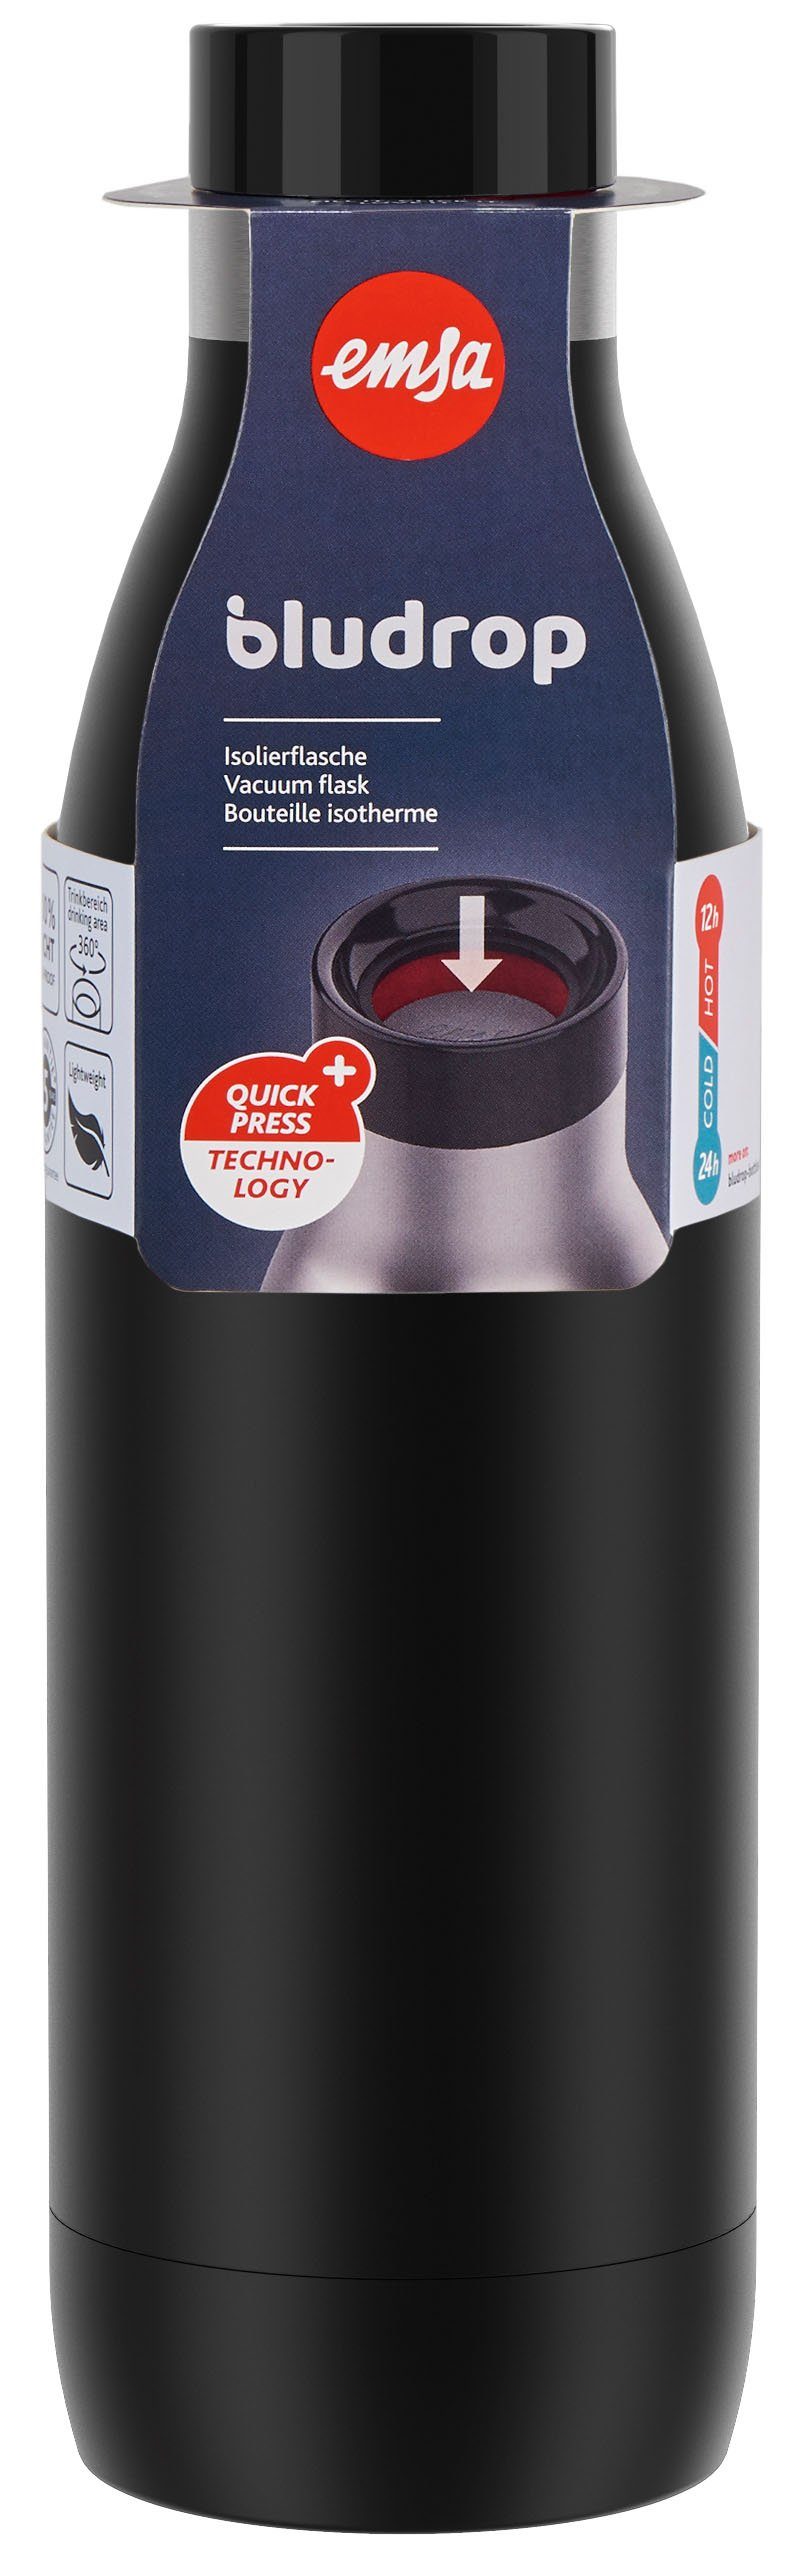 Emsa Trinkflasche Color, 12h Bludrop Edelstahl, kühl, warm/24h schwarz Deckel, Quick-Press spülmaschinenfest